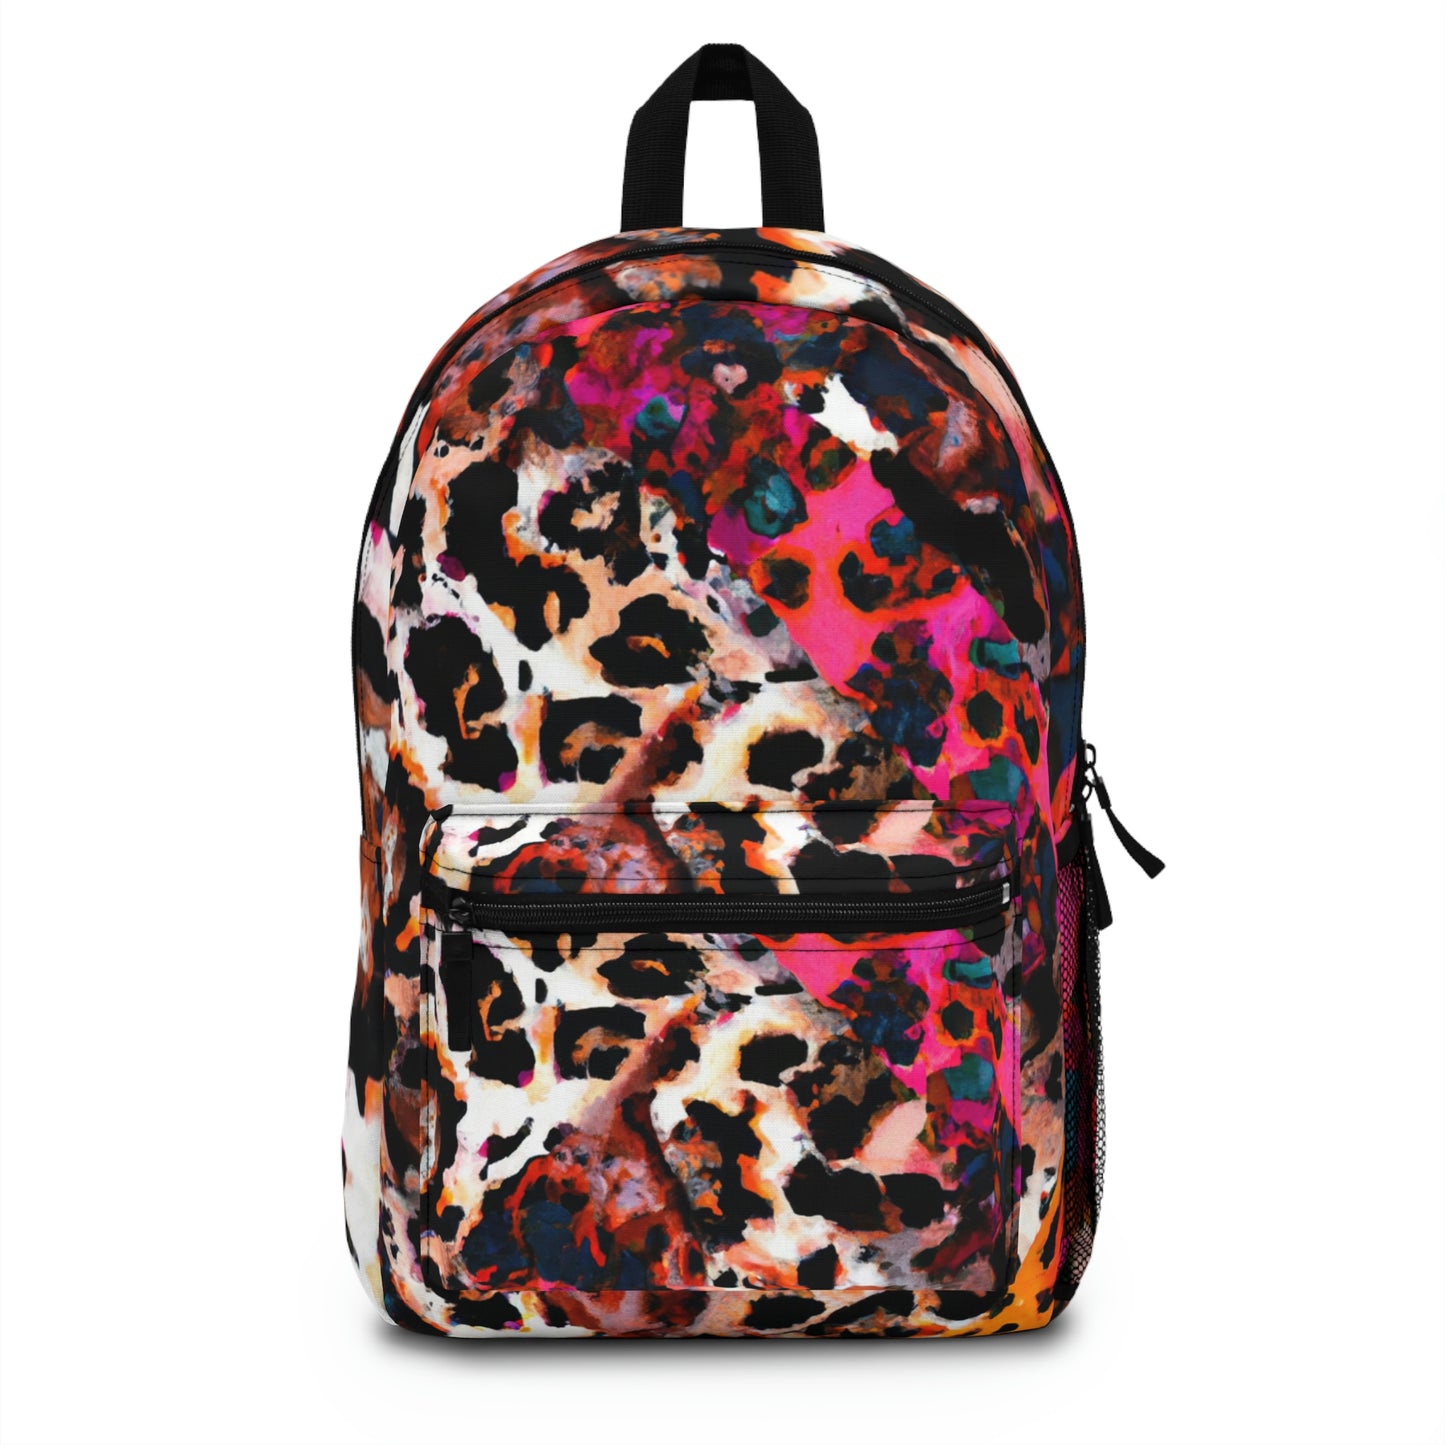 Kryto Bloom Backpack